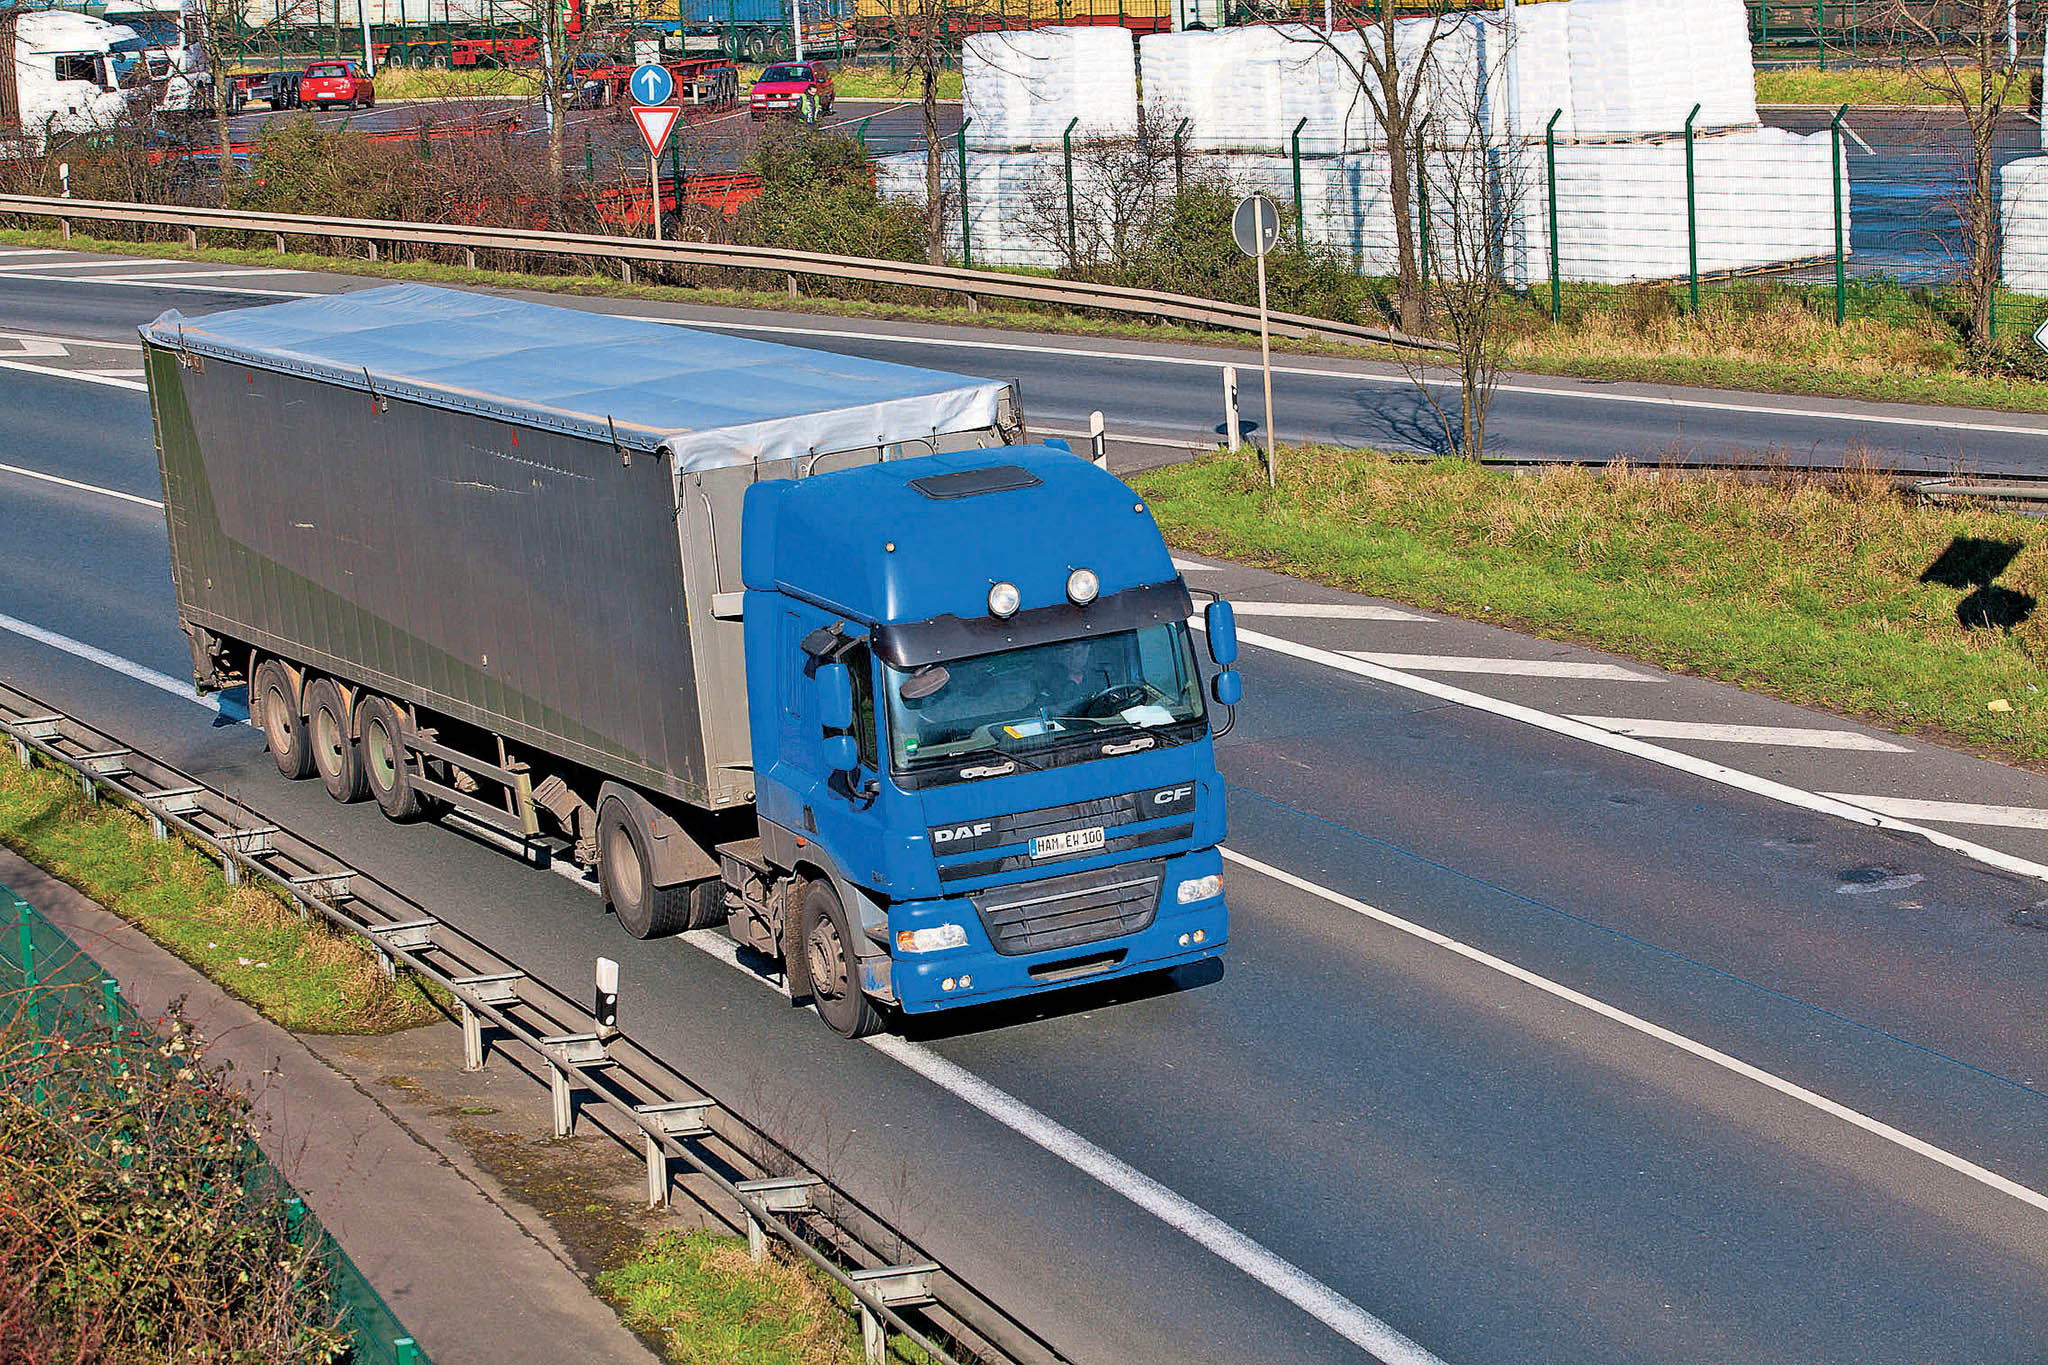 Silnièní nákladní doprava sehrává zásadní roli nejen v mezinárodním obchodu, ale též ve vnitrostátním, kde vzhledem k malým pøepravním vzdálenostem zpravidla nemá efektivnìjší alternativu.